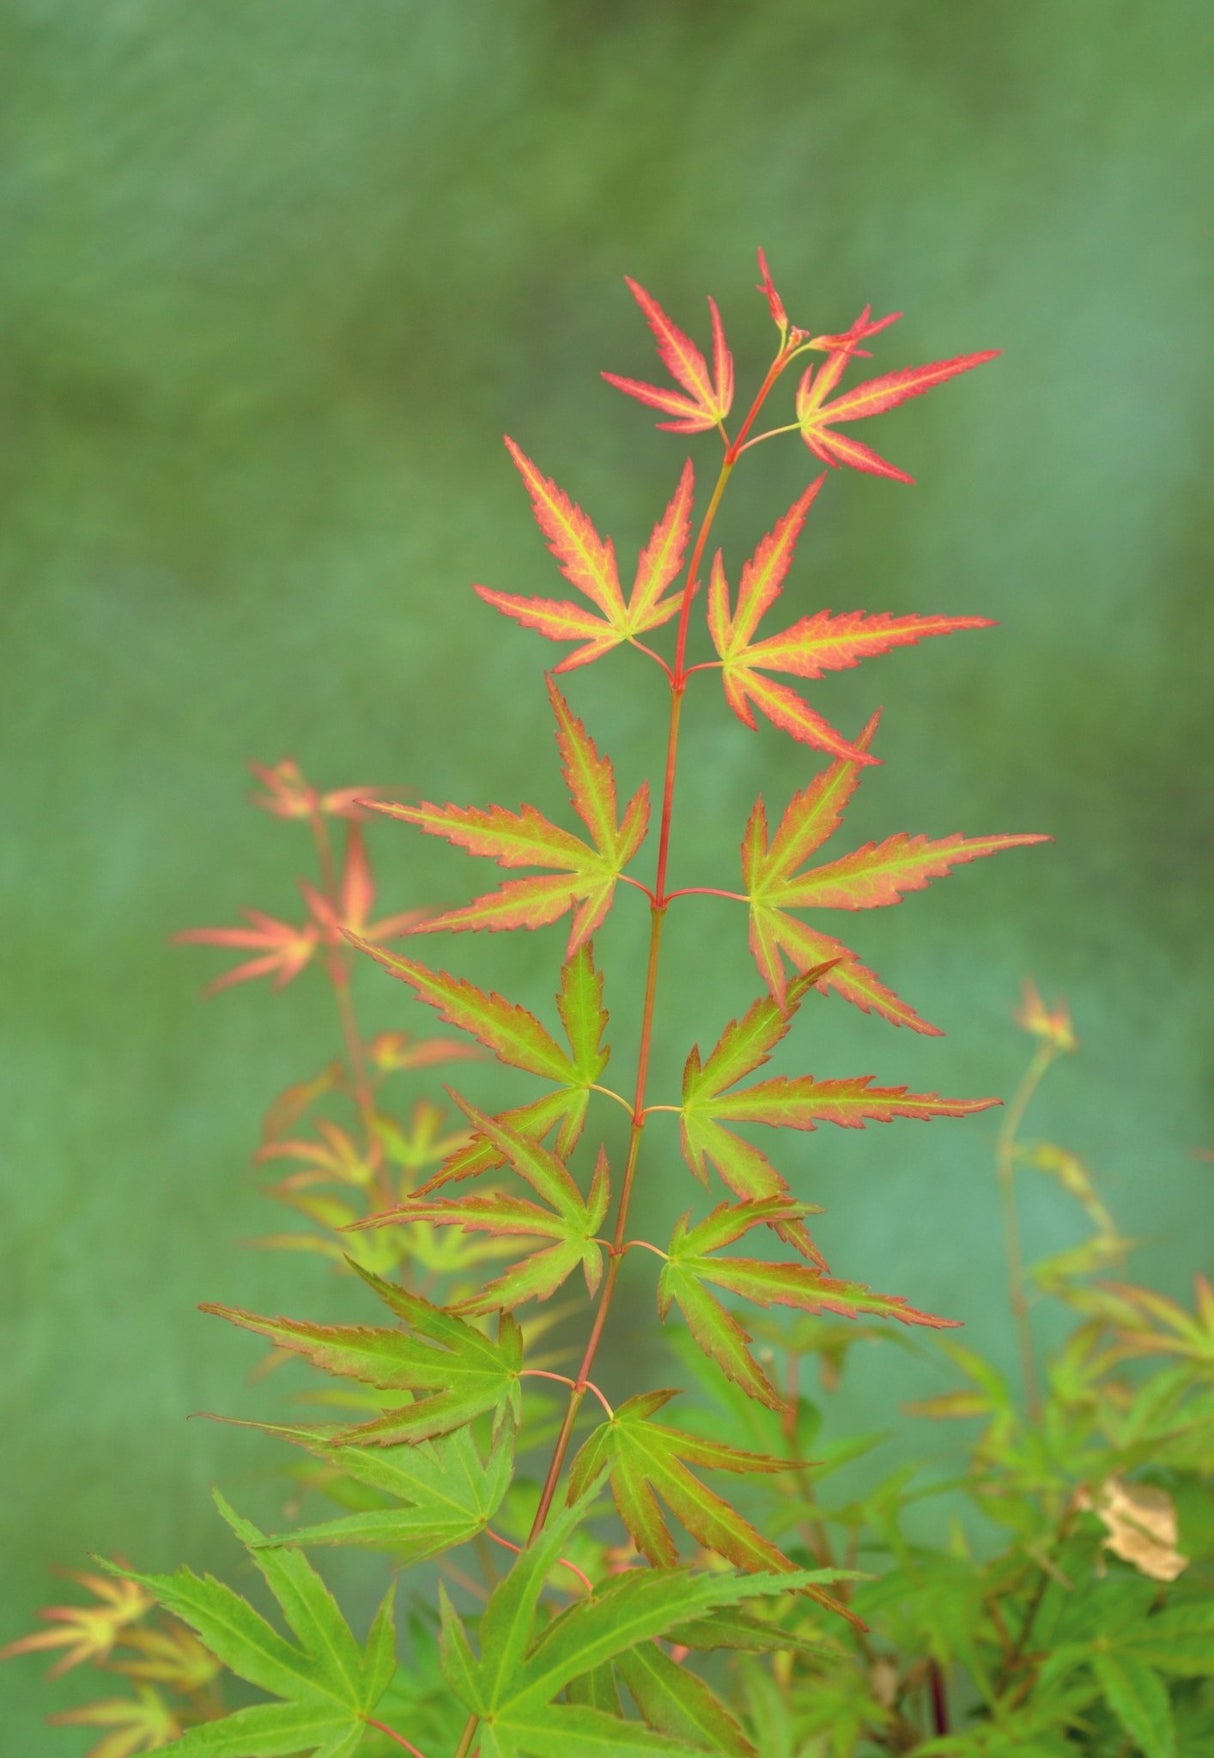 Livraison plante - Erable du japon - Acer 'Wilson's Pink Dwarf' - ↨40cm - Ø19cm - extérieur